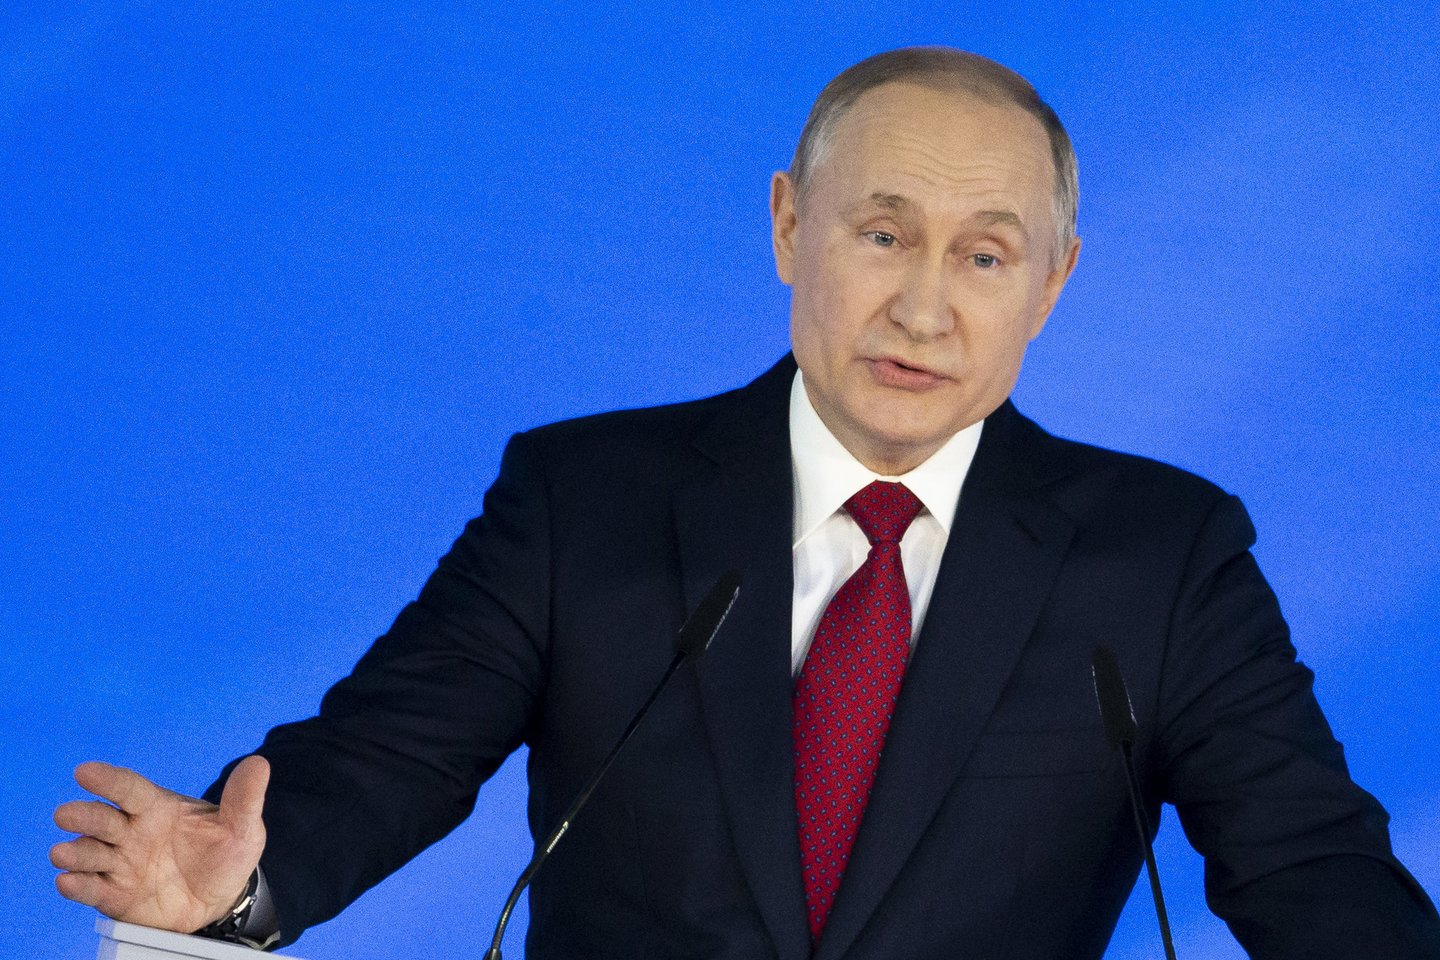  Rusijos prezidentas Vladimiras Putinas trečiadienį pareiškė, kad jo šaliai būtina stipri prezidentinė valdžia, o parlamentinė valdymo forma daugelyje šalių stringa.  <br>AP/Scanpix nuotr.